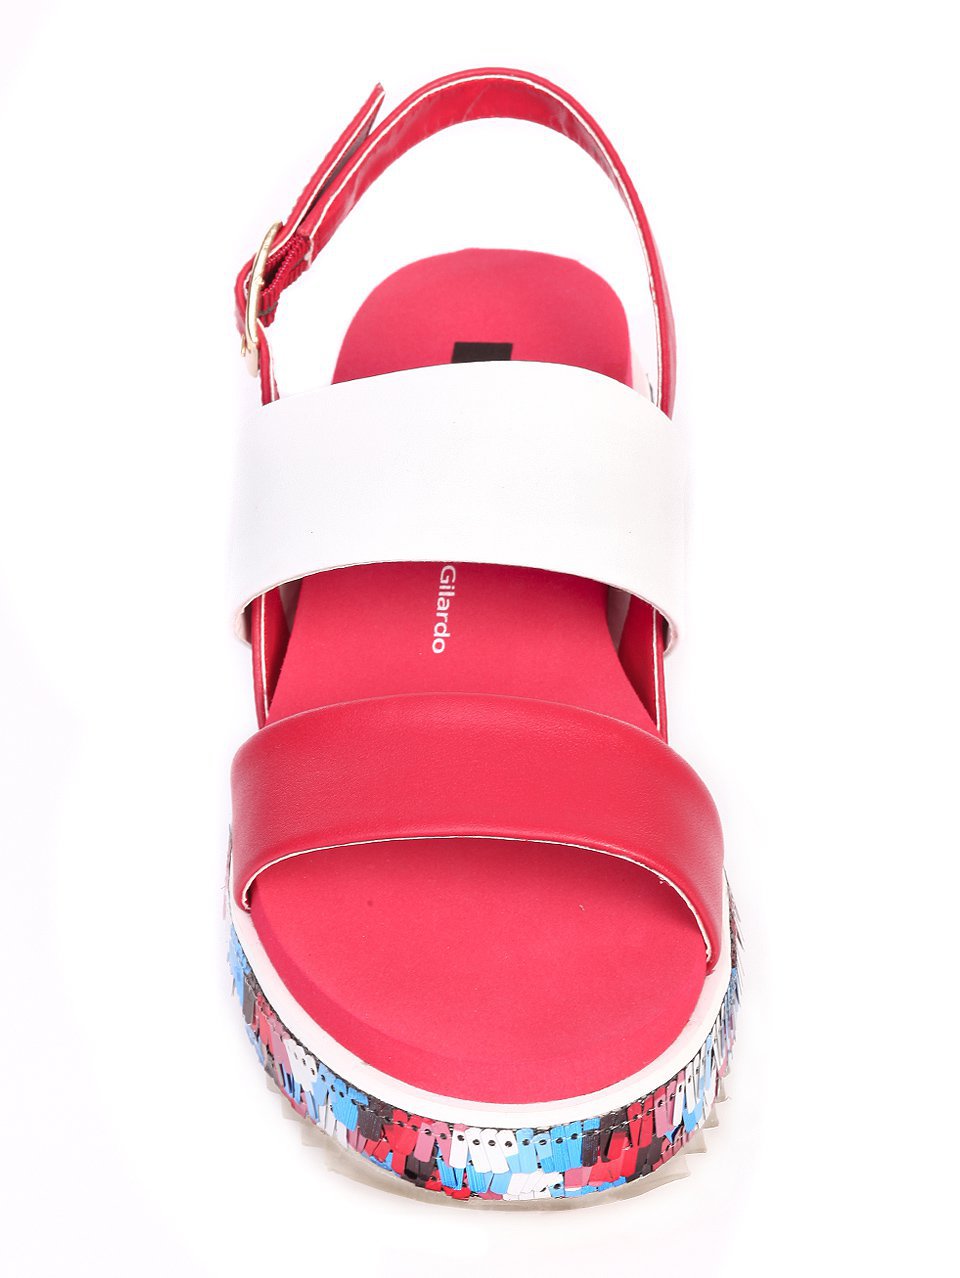 Ежедневни дамски сандали от естествена кожа 4AR-17458 red/white